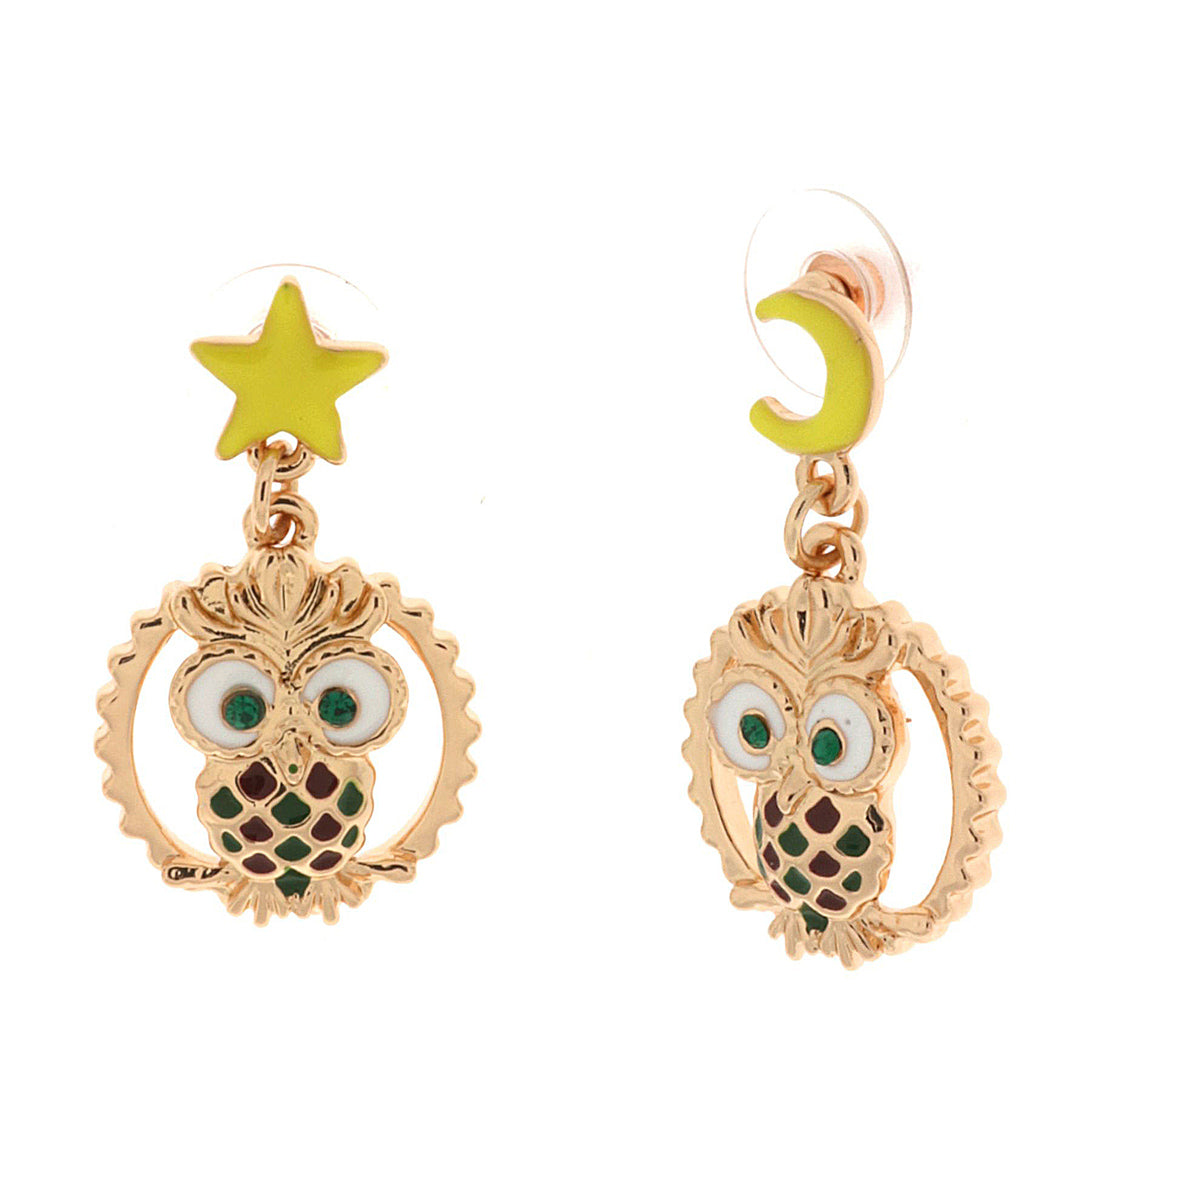 Metal earrings with owl